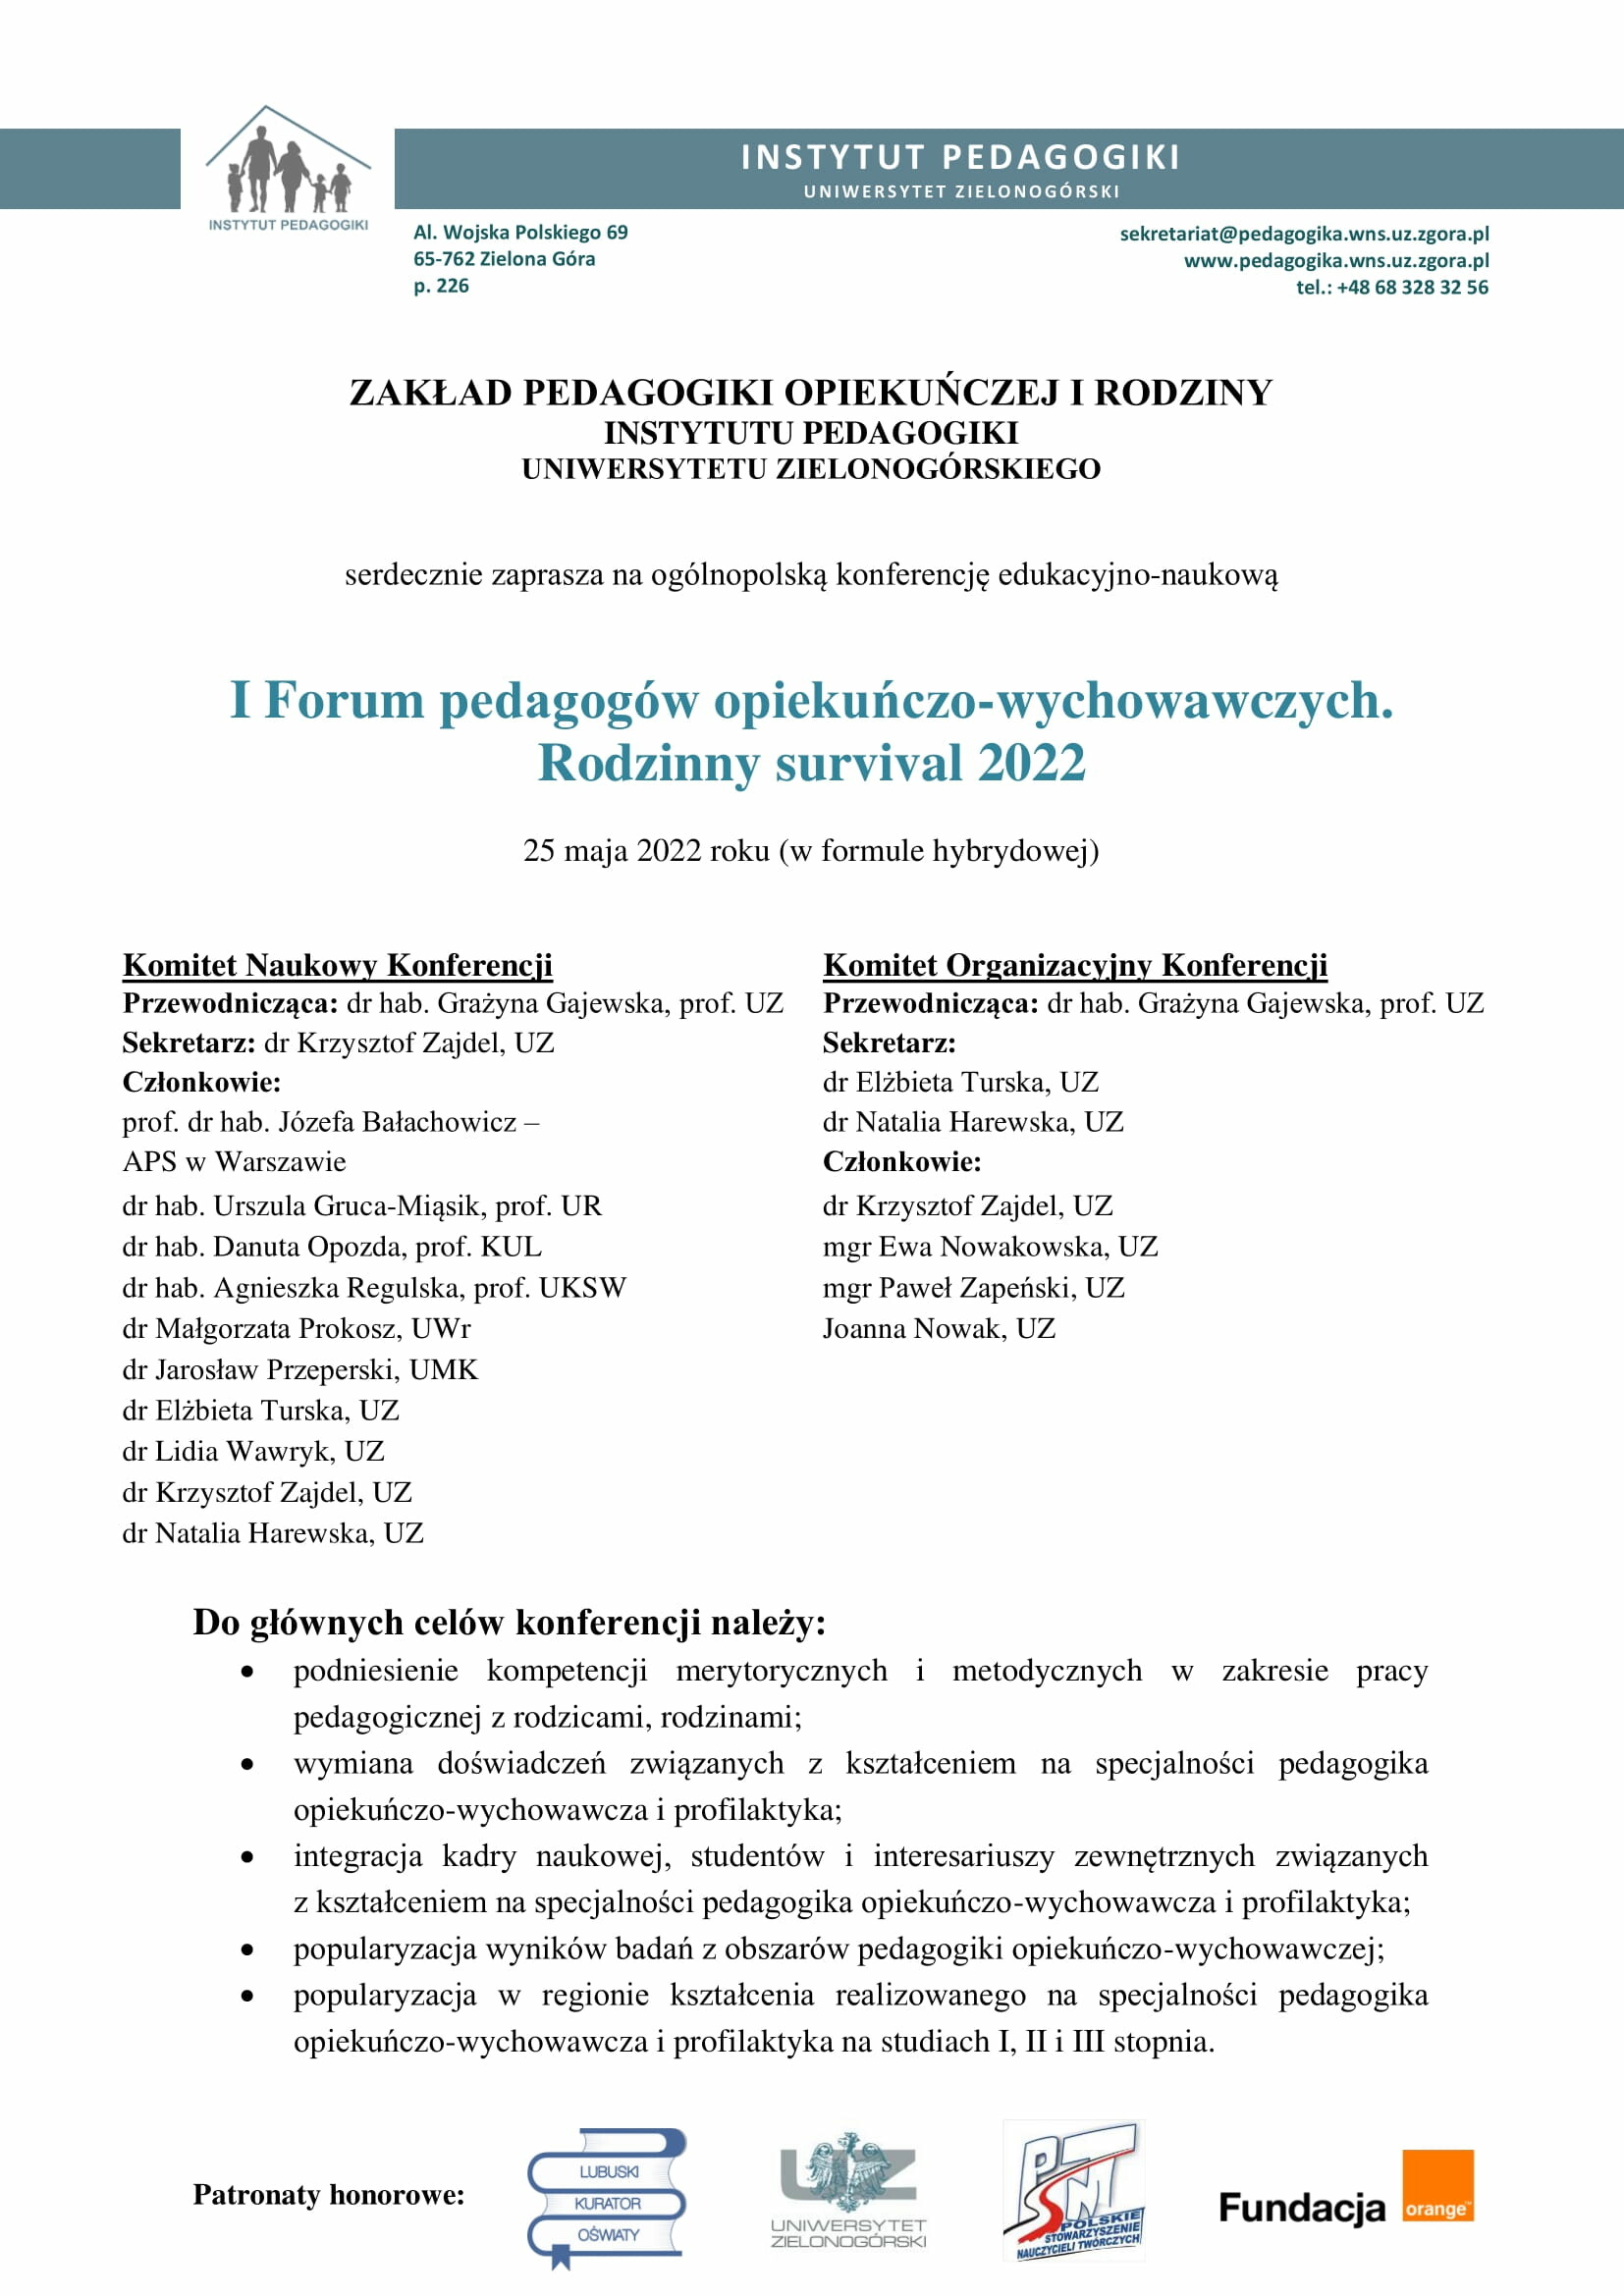 forum-pedagogow-opiekunczo-wychowawczych-komunikat-nr-1-07052022-1.jpg